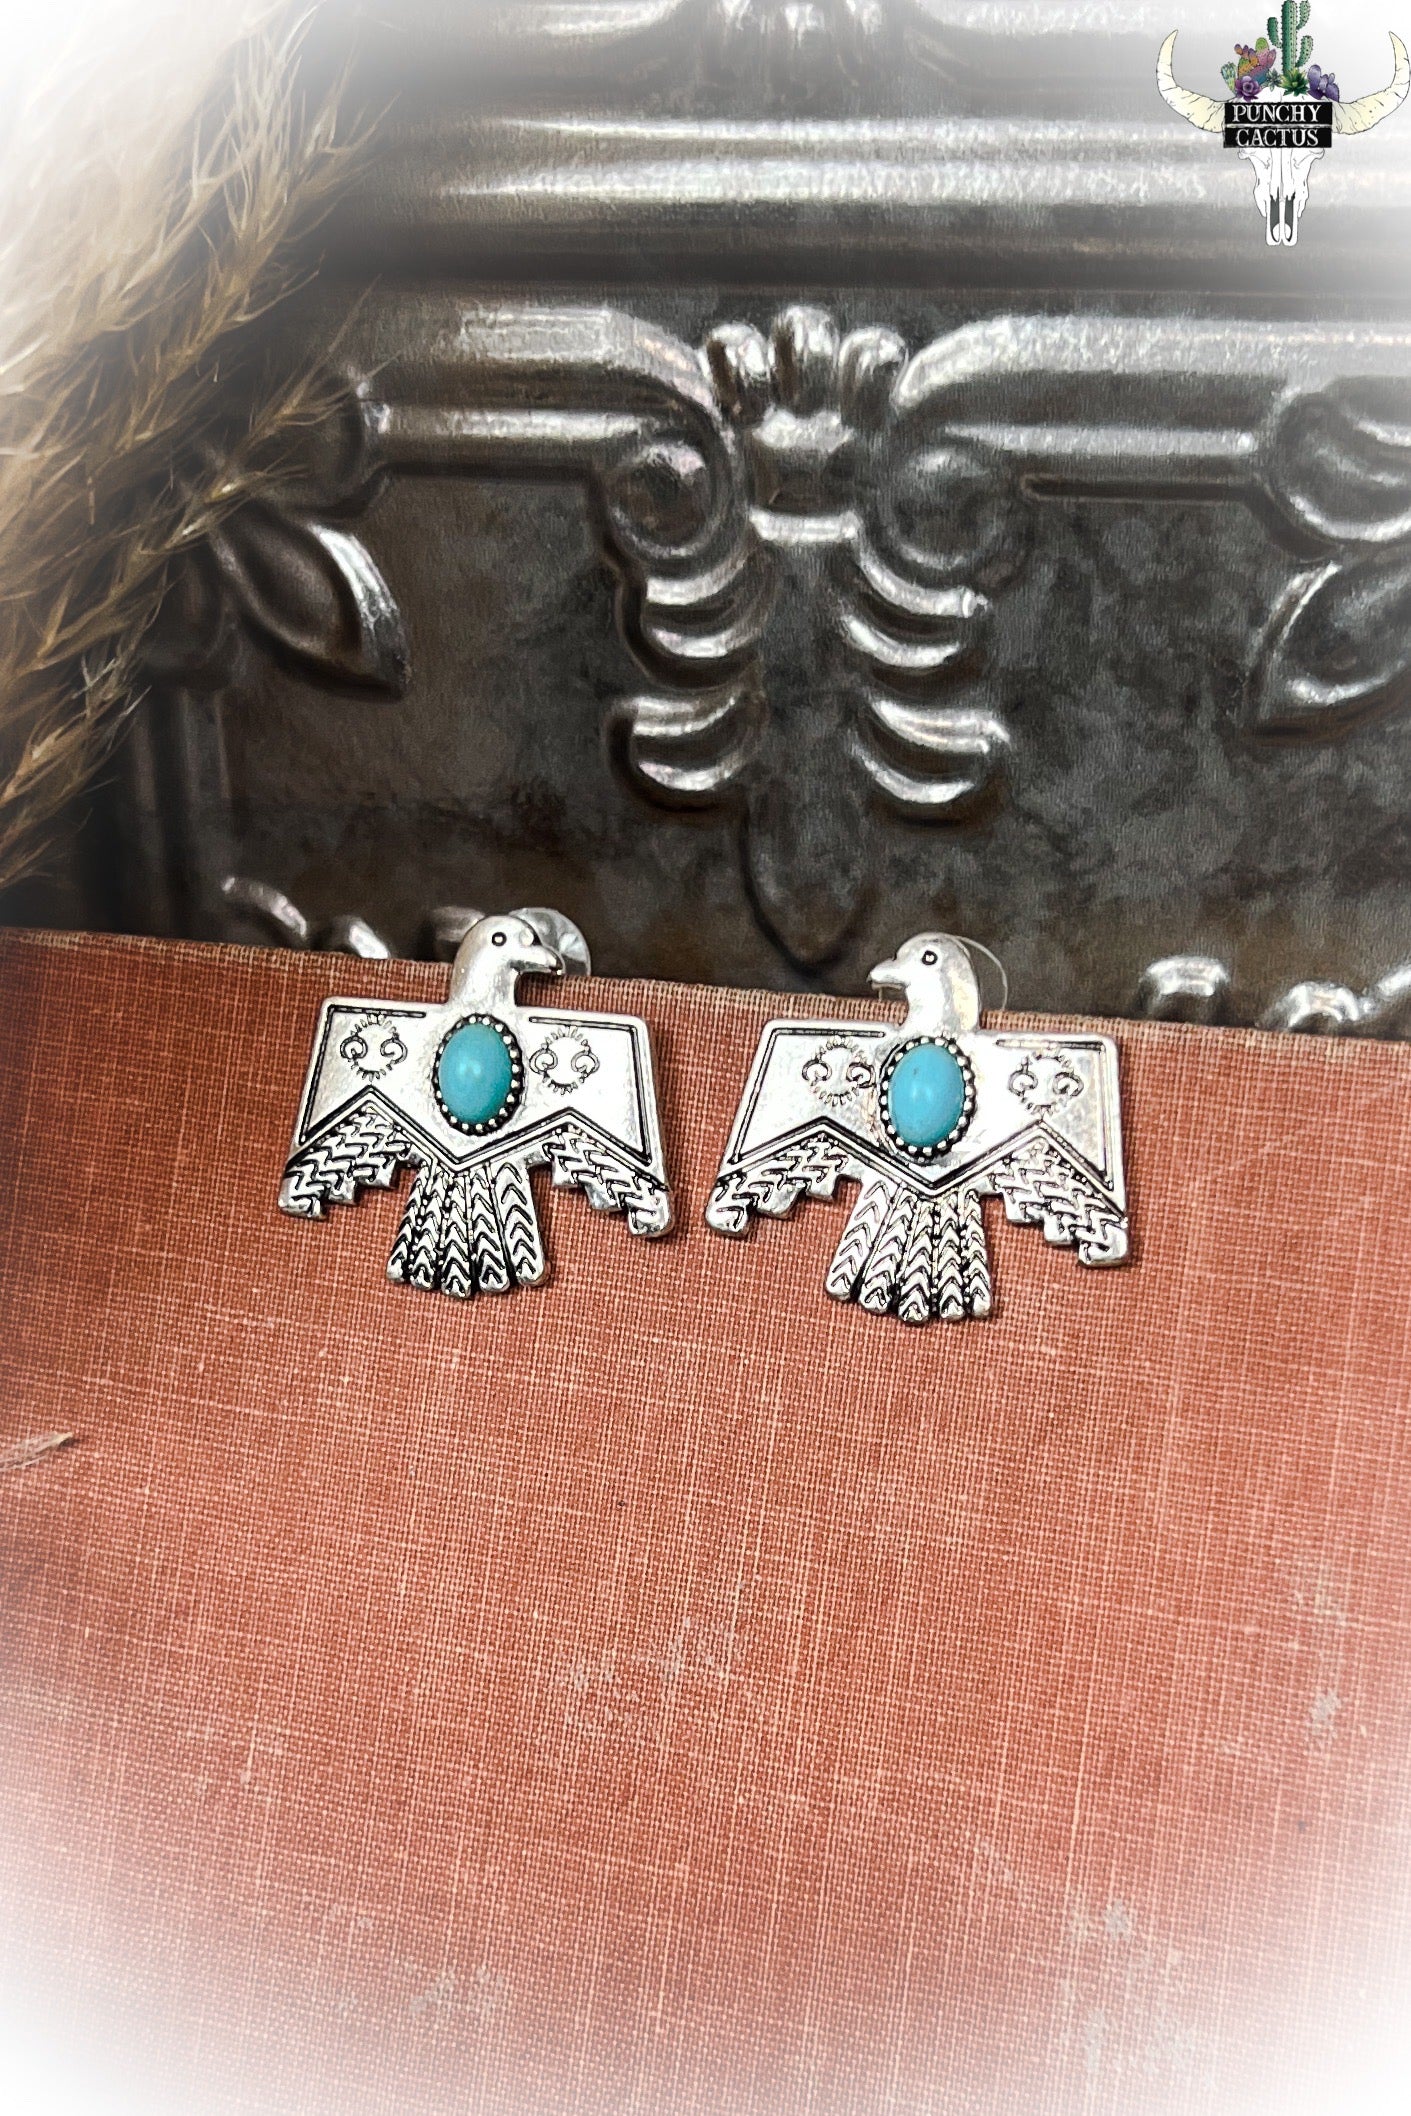 z-Thunderbird Stud Earrings - Turquoise